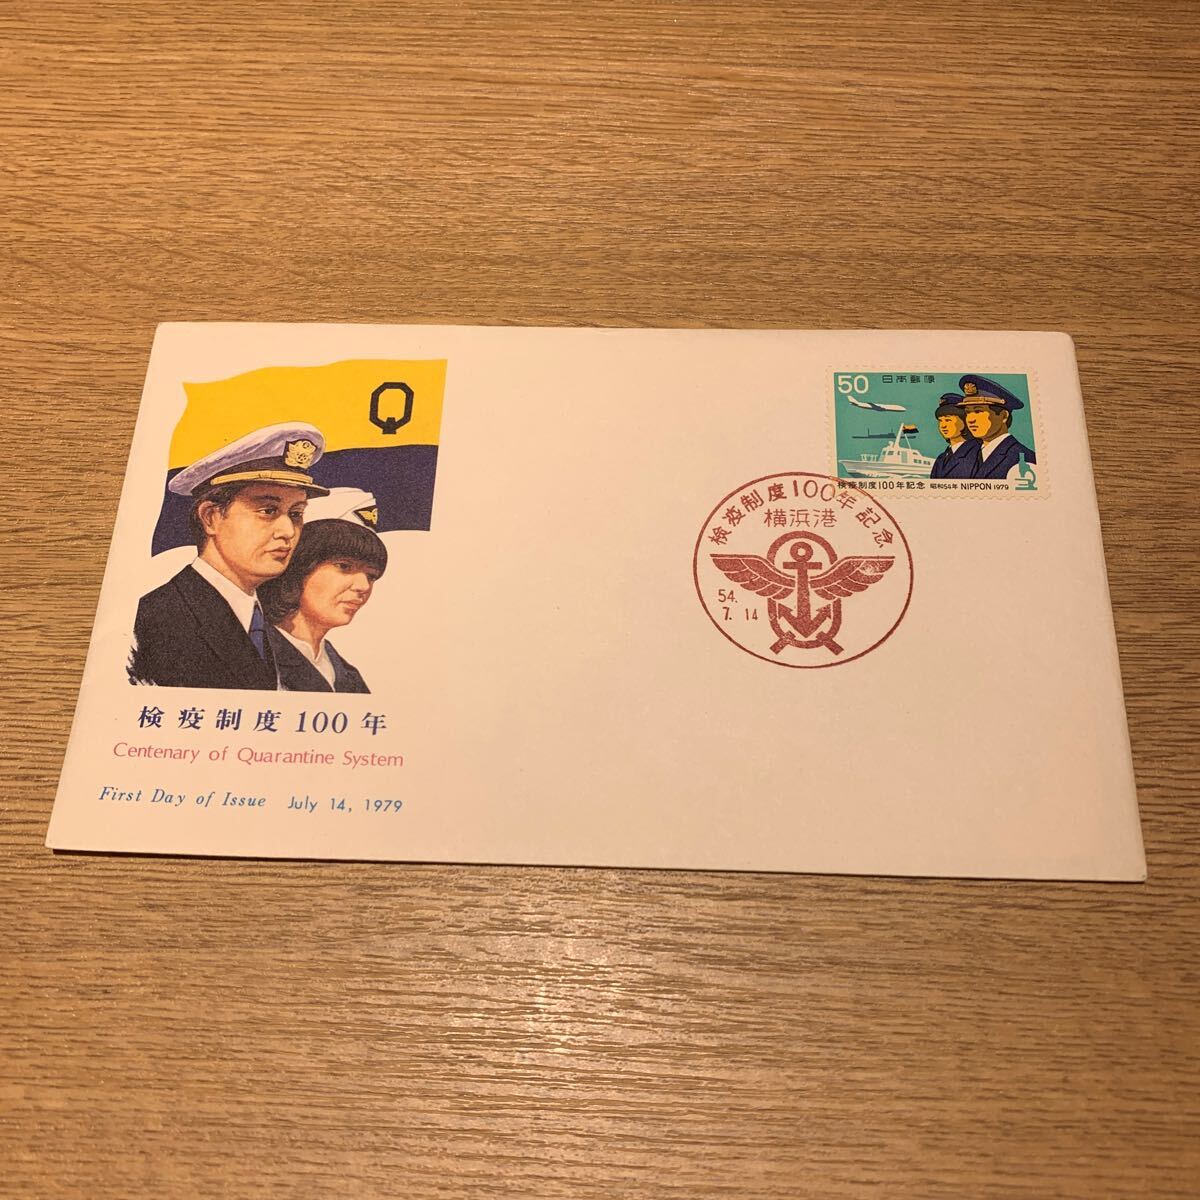 初日カバー 検疫制度100年記念郵便切手 昭和54年発行の画像1